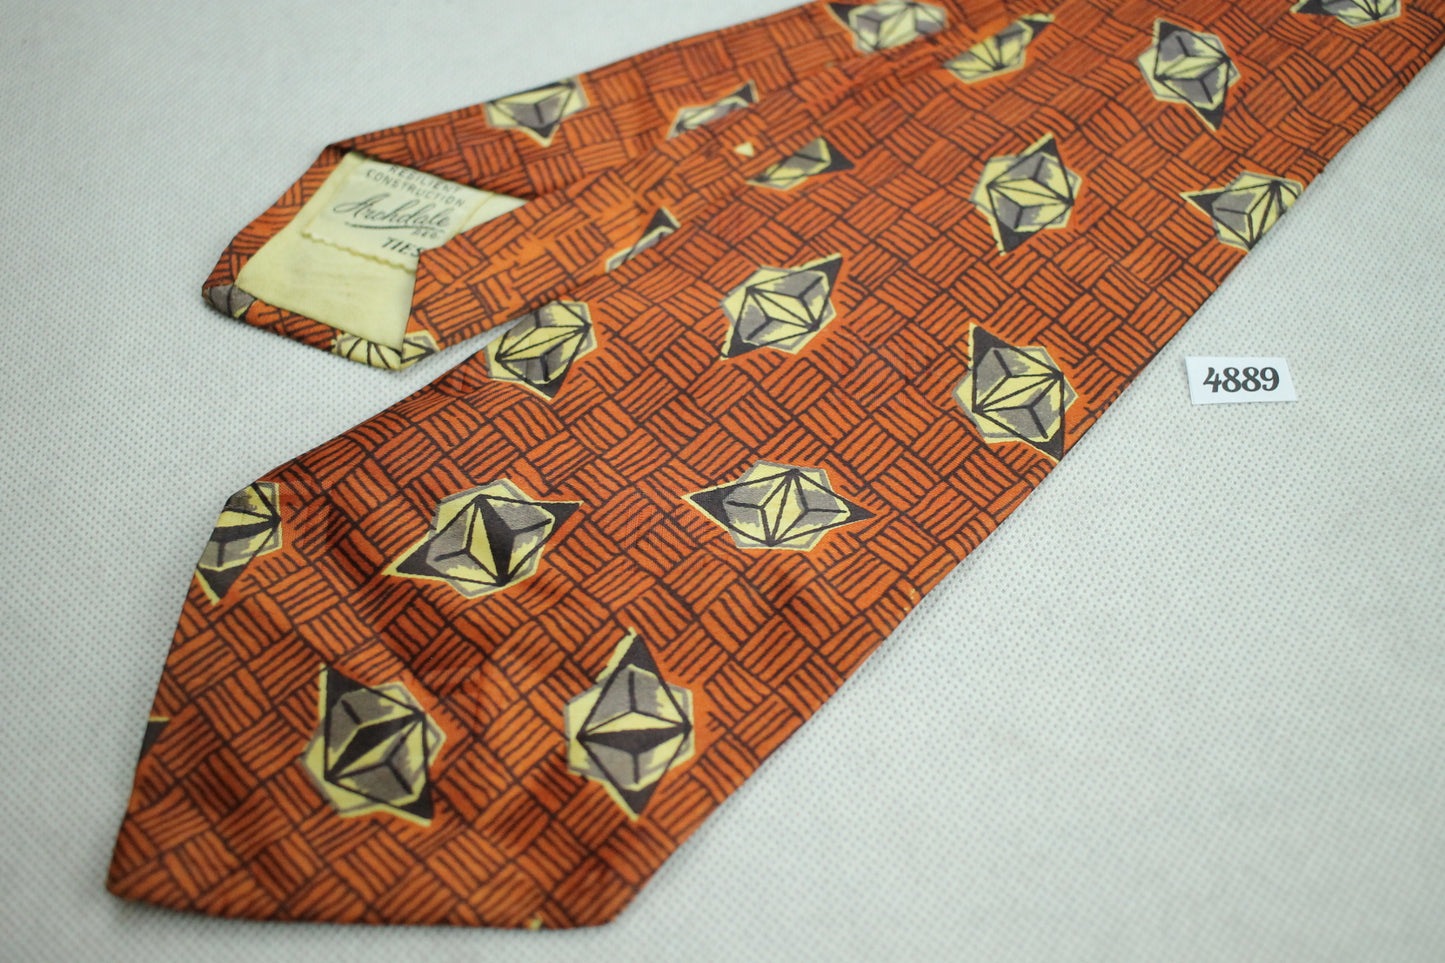 Vintage 1940s/50s Archdale Ties Orange Brown Basketweave Diamonds Swing Tie